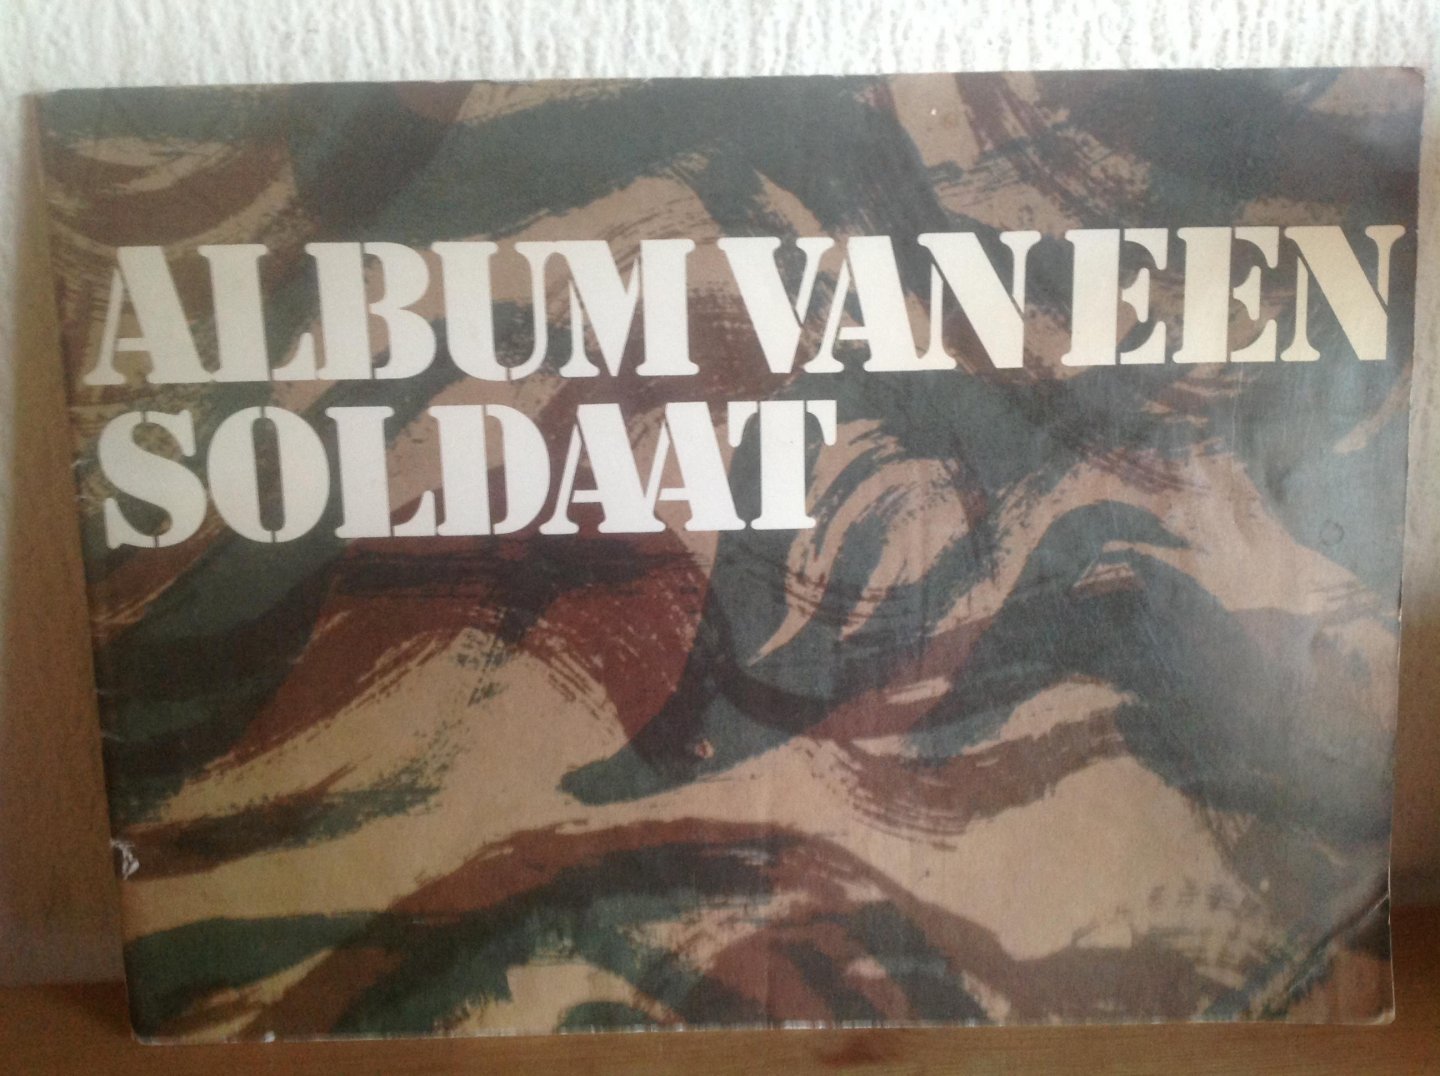 Rutten - Album van een soldaat